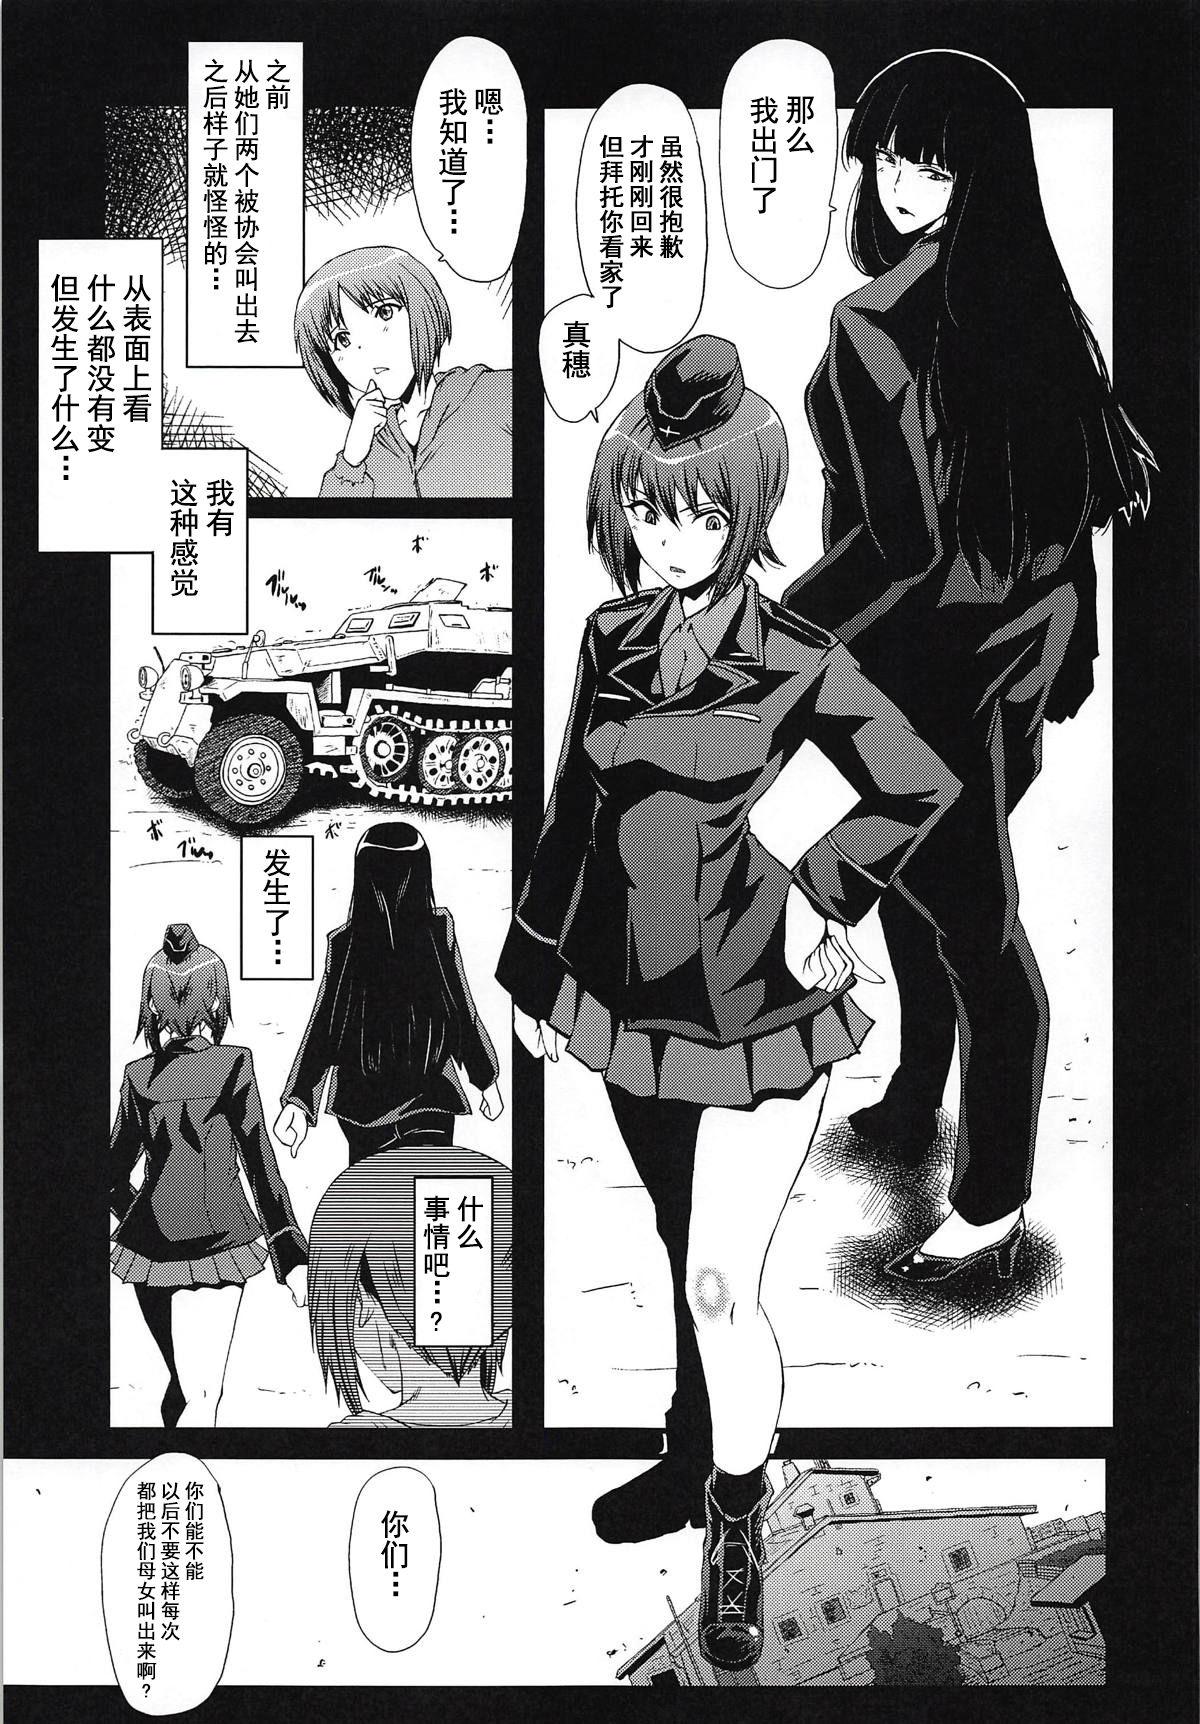 Cheerleader Urabambi Vol. 57 Taihai no Koutetsu Fujin - Girls und panzer Aussie - Page 4